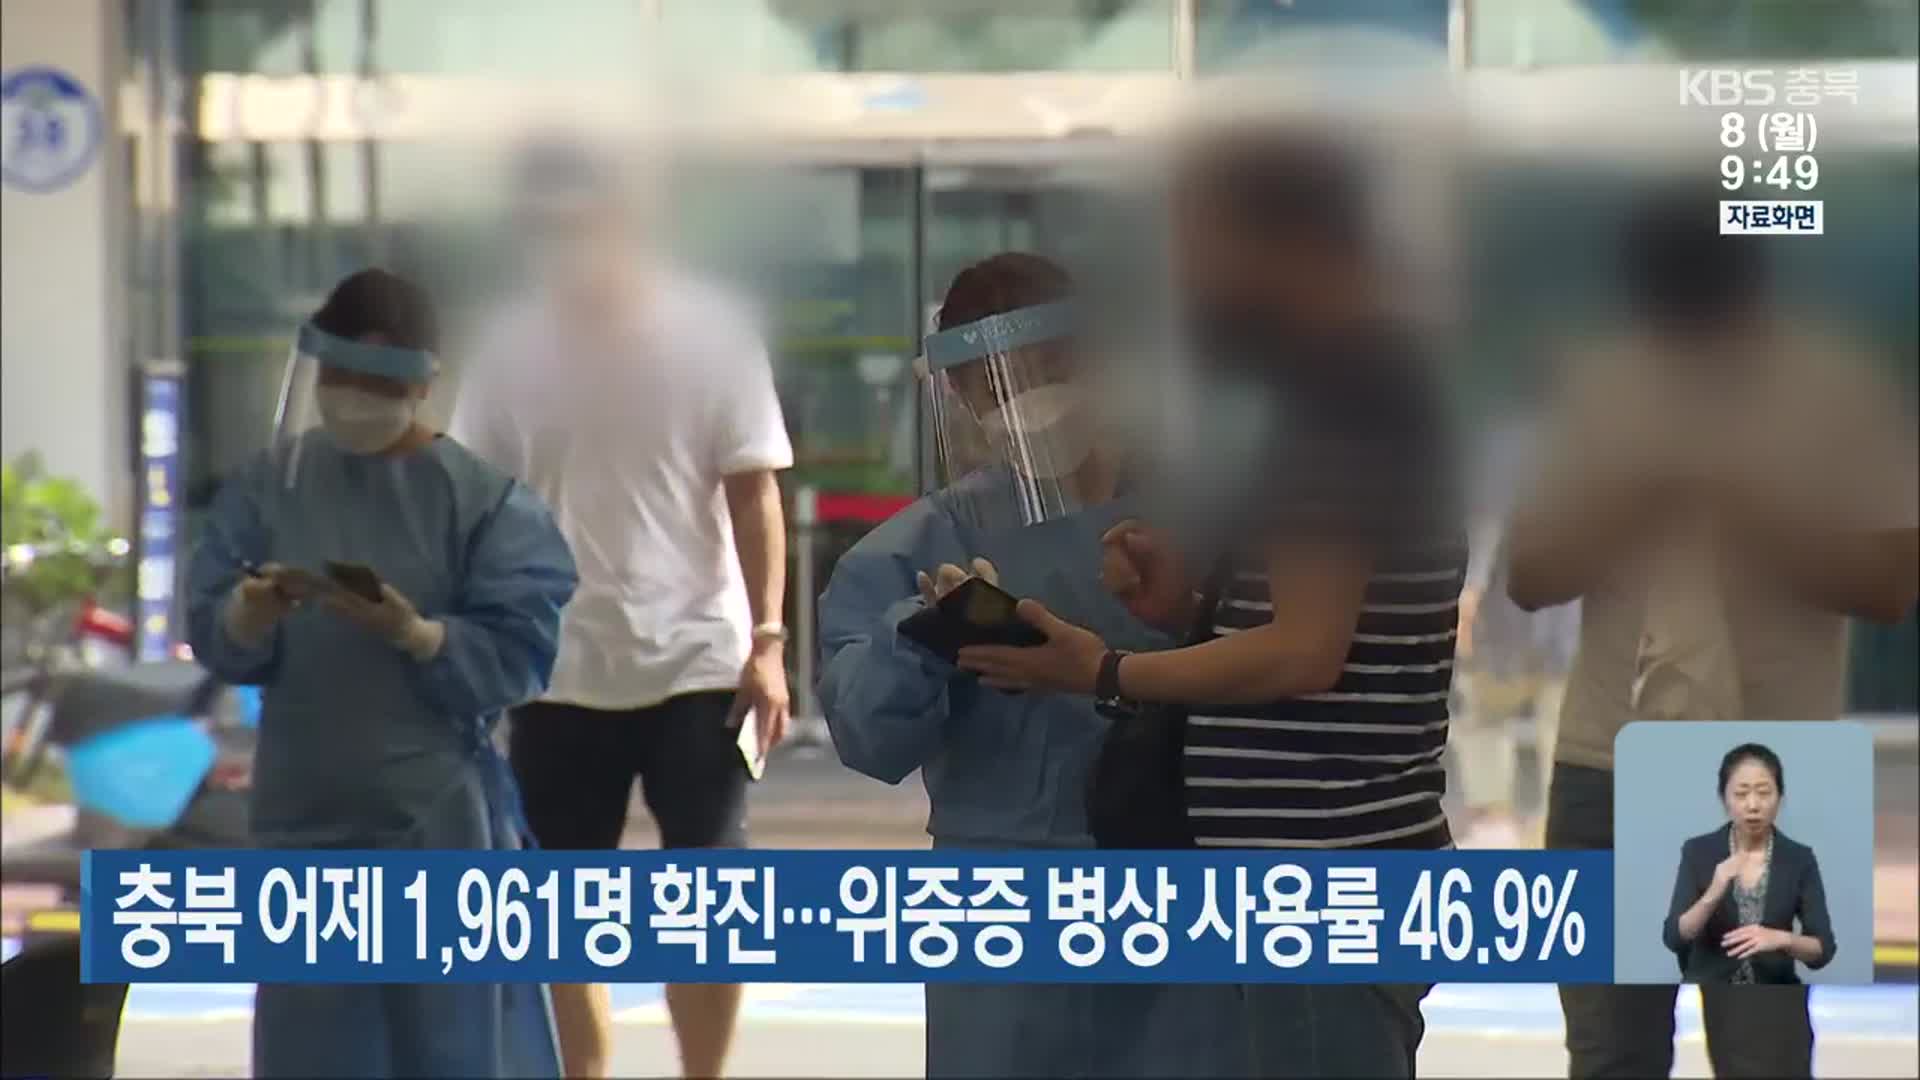 충북 어제 1,961명 확진…위중증 병상 사용률 46.9%